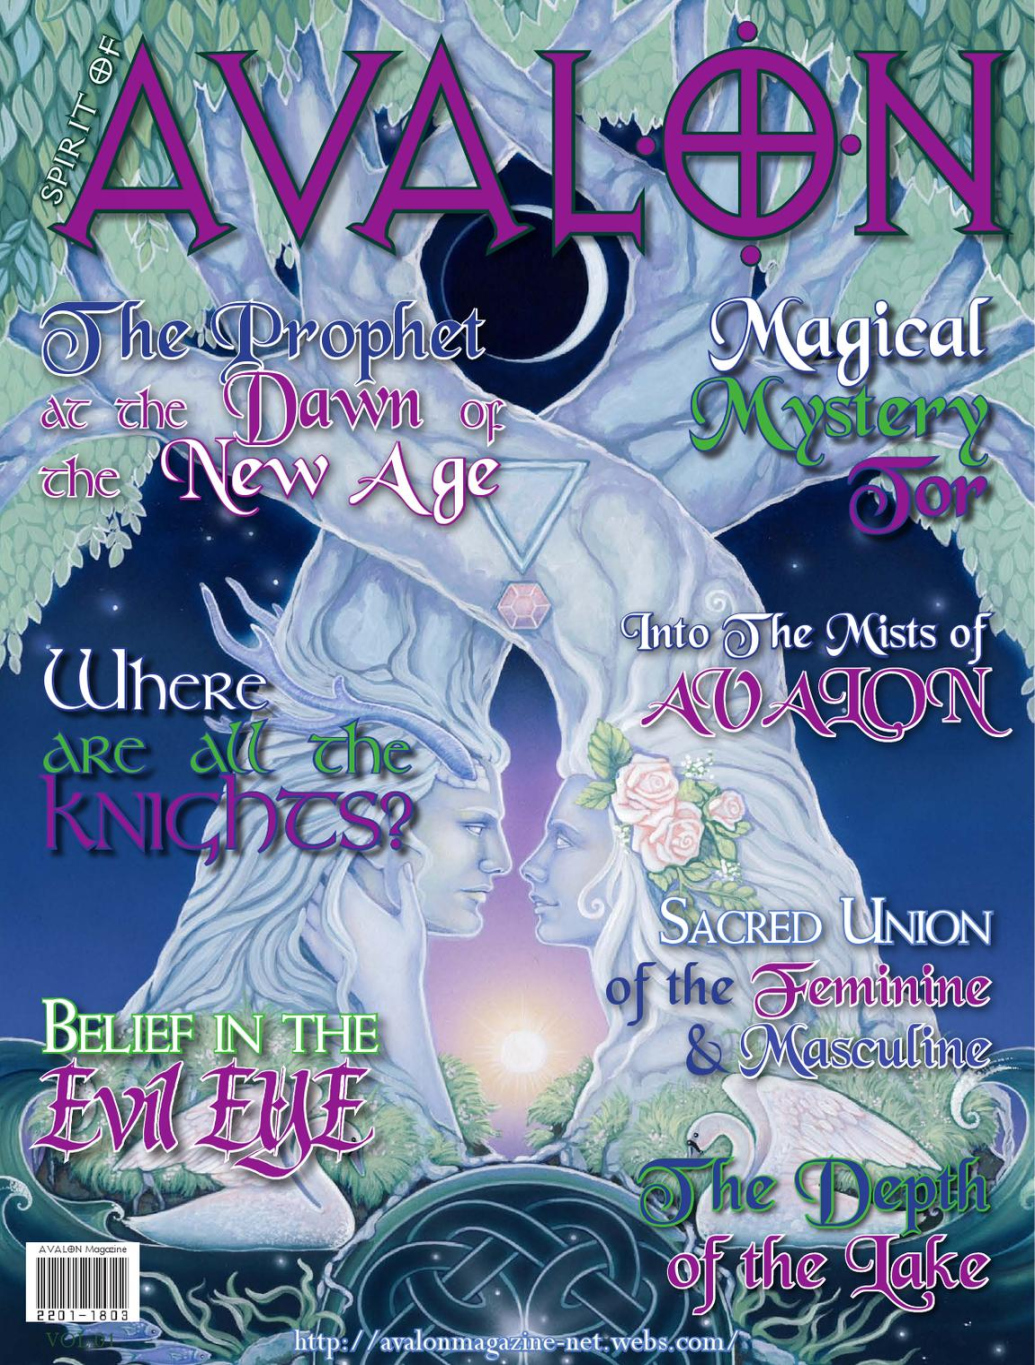 Spirit of AVALON Magazine by sroyarose - Issuu